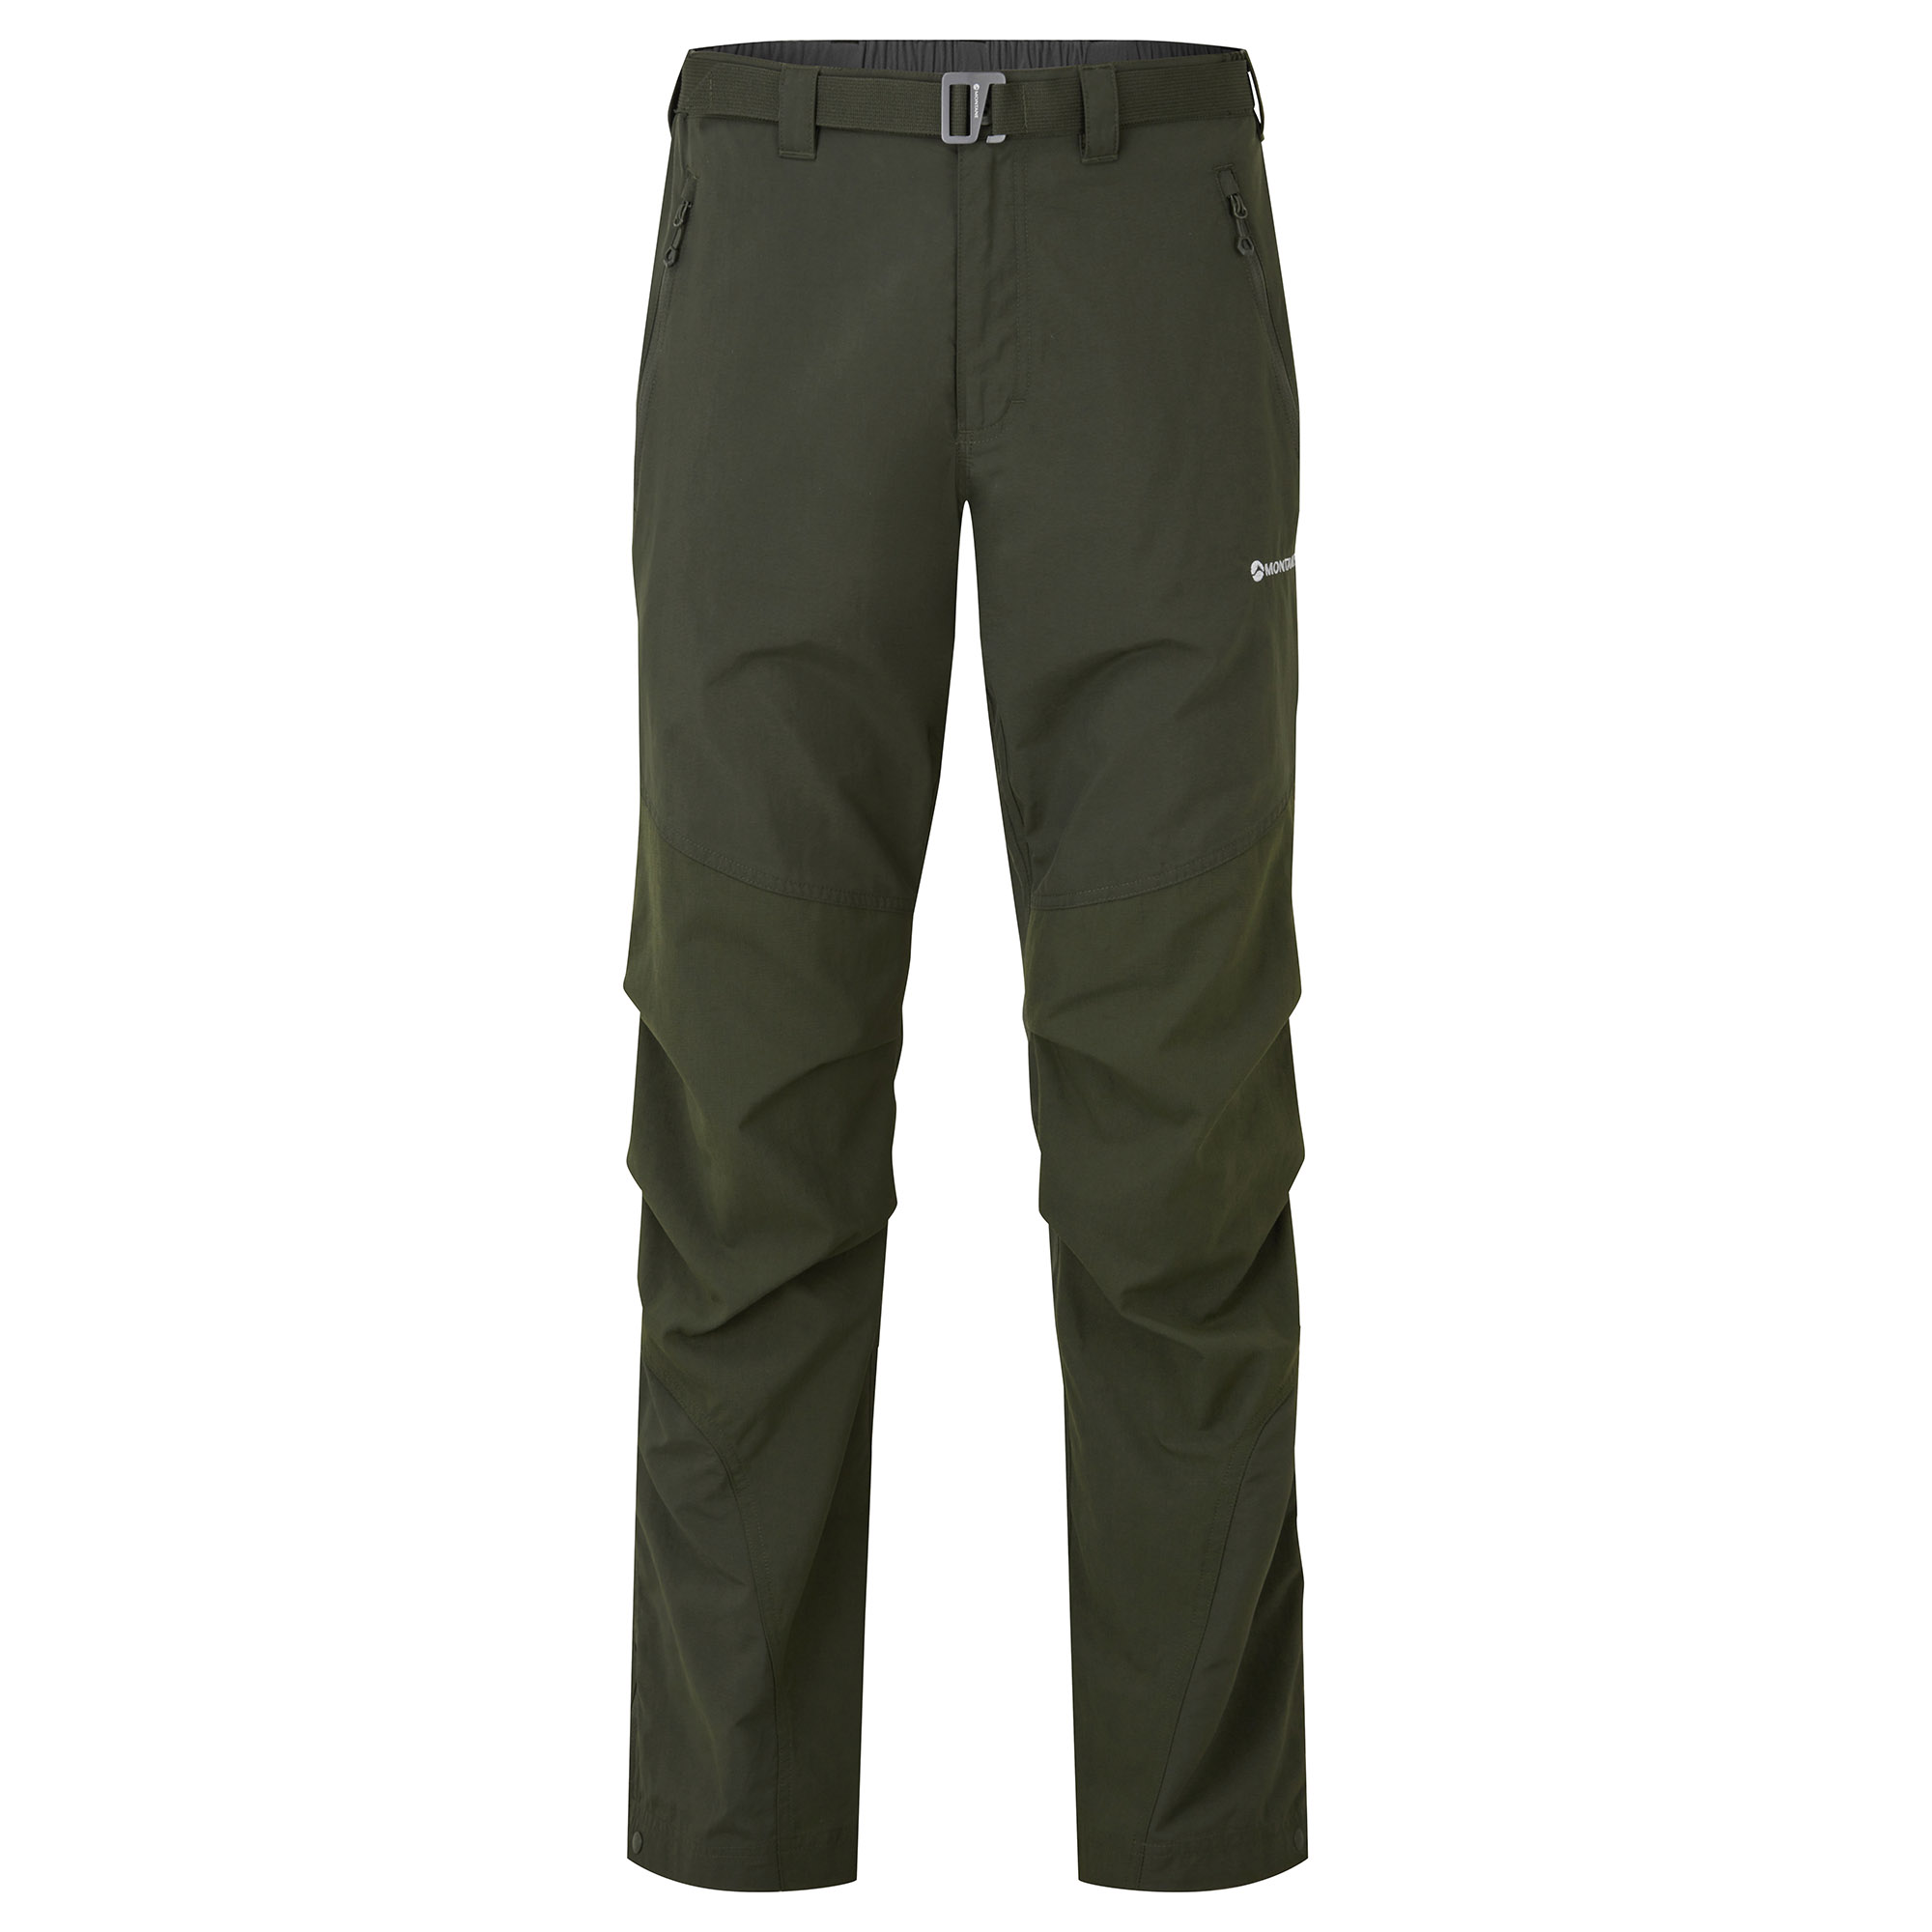 Montane pánské softshellové kalhoty Terra Pants - Prodloužené Nohavice Barva: Oak Green, Velikost: 30